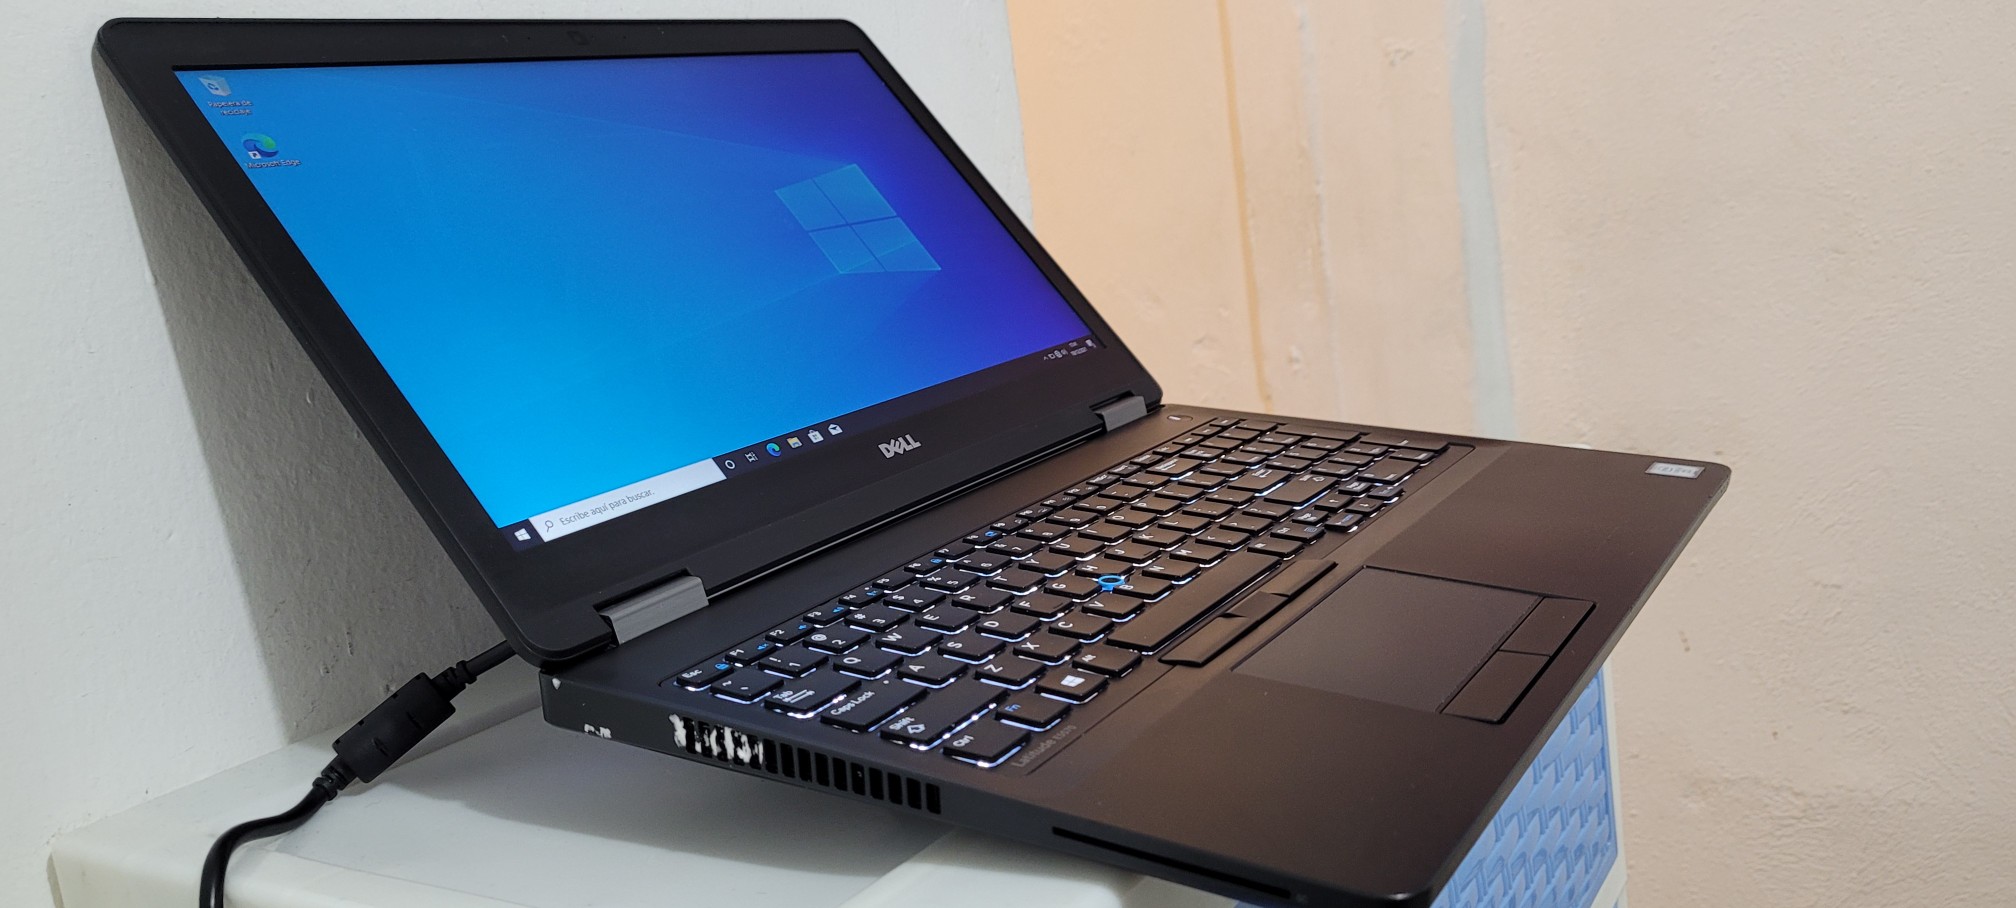 computadoras y laptops - Laptop Dell 5590 17 Pulg Core i5 8va Gen Ram 16gb Disco 512gb SSD Solido  1